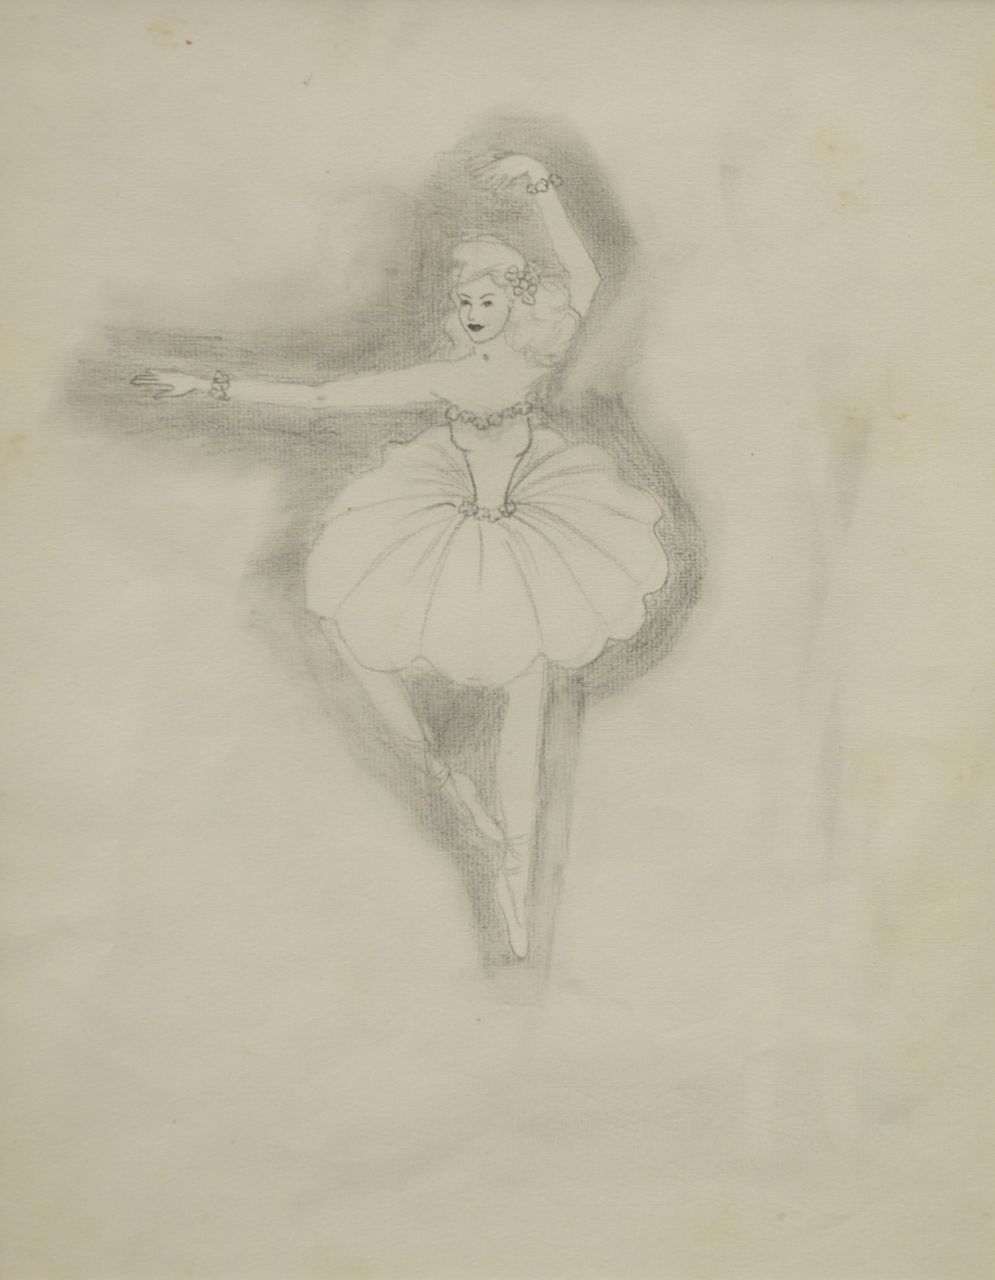 Oranje-Nassau (Prinses Beatrix) B.W.A. van | Beatrix Wilhelmina Armgard van Oranje-Nassau (Prinses Beatrix), Balletdanseres in positie, potlood op papier 30,0 x 23,0 cm